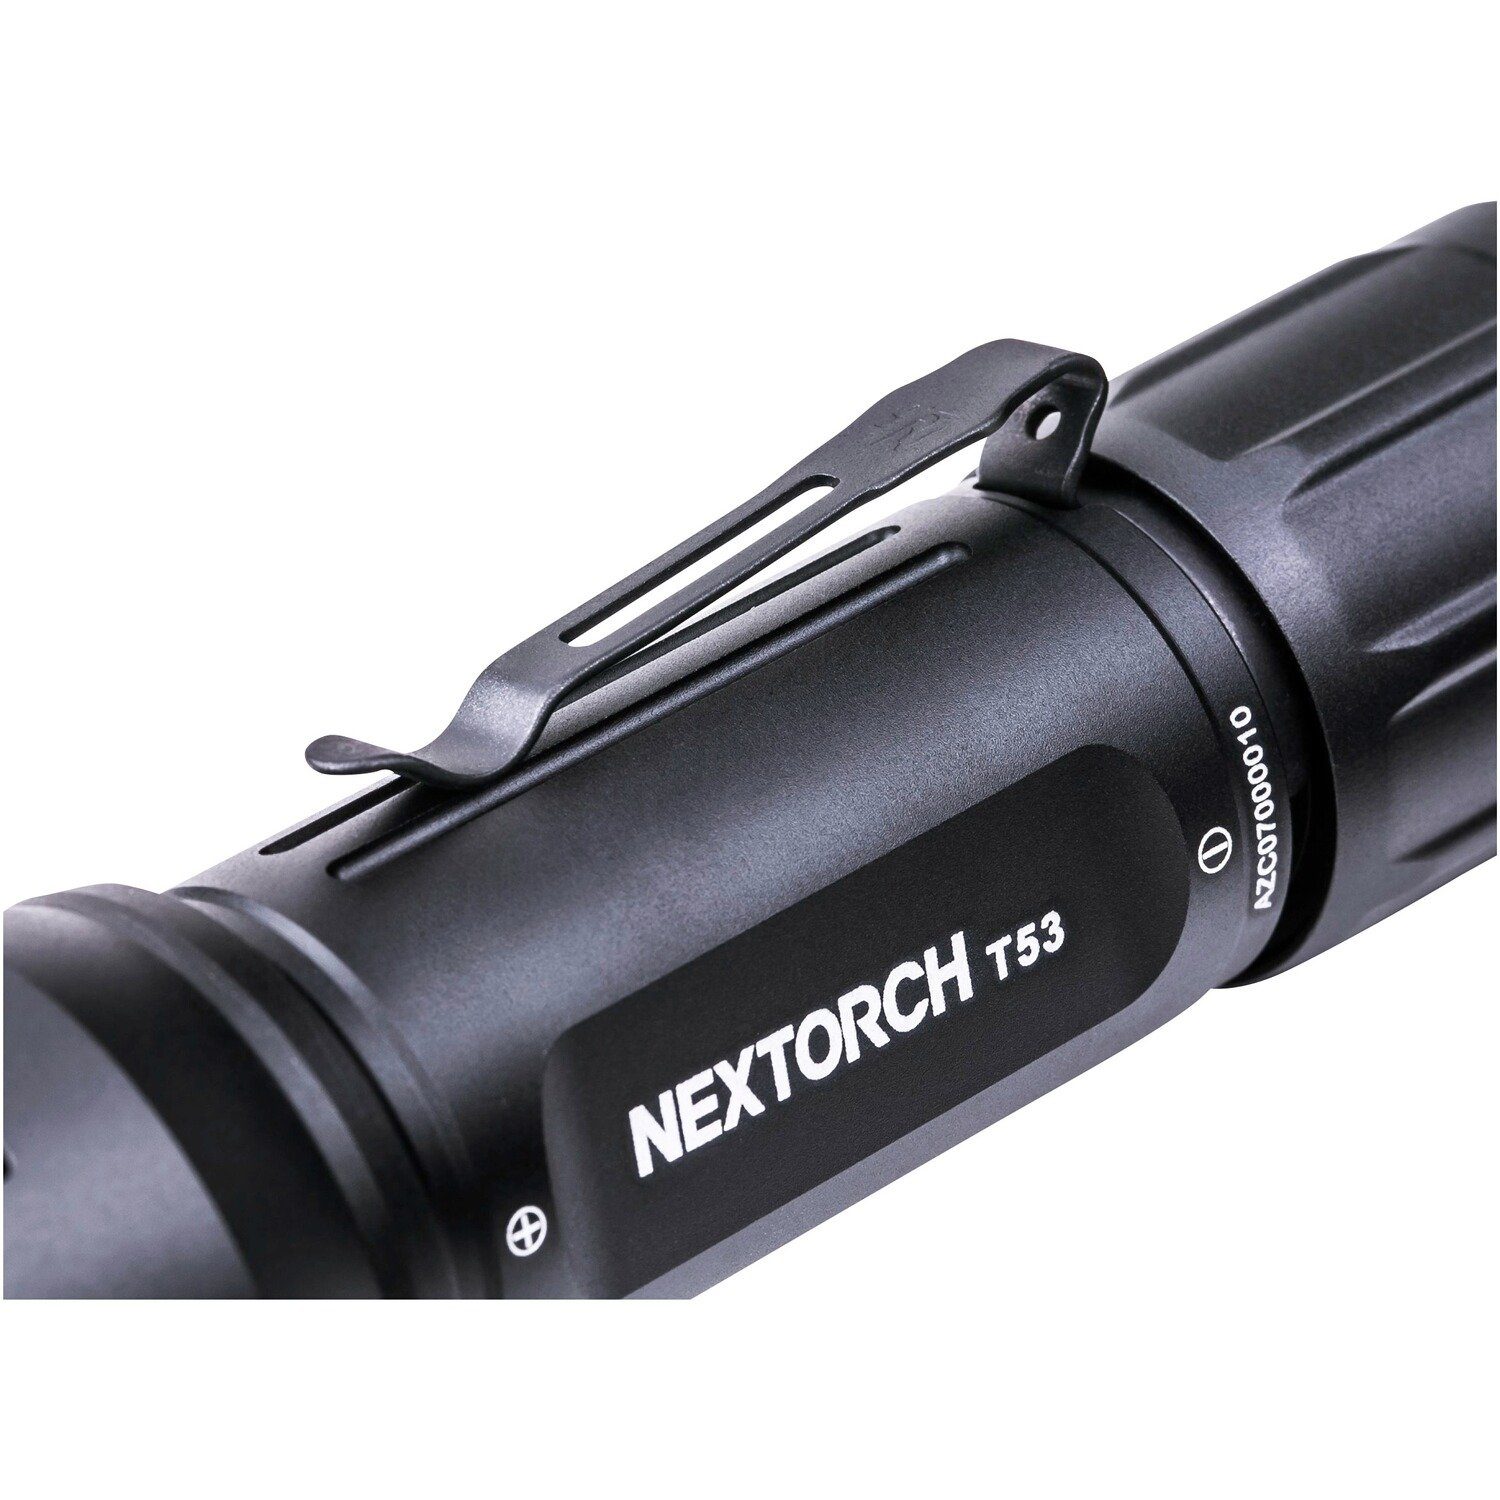 Nextorch mit Lampe Farbwechsel T53 Taschenlampe